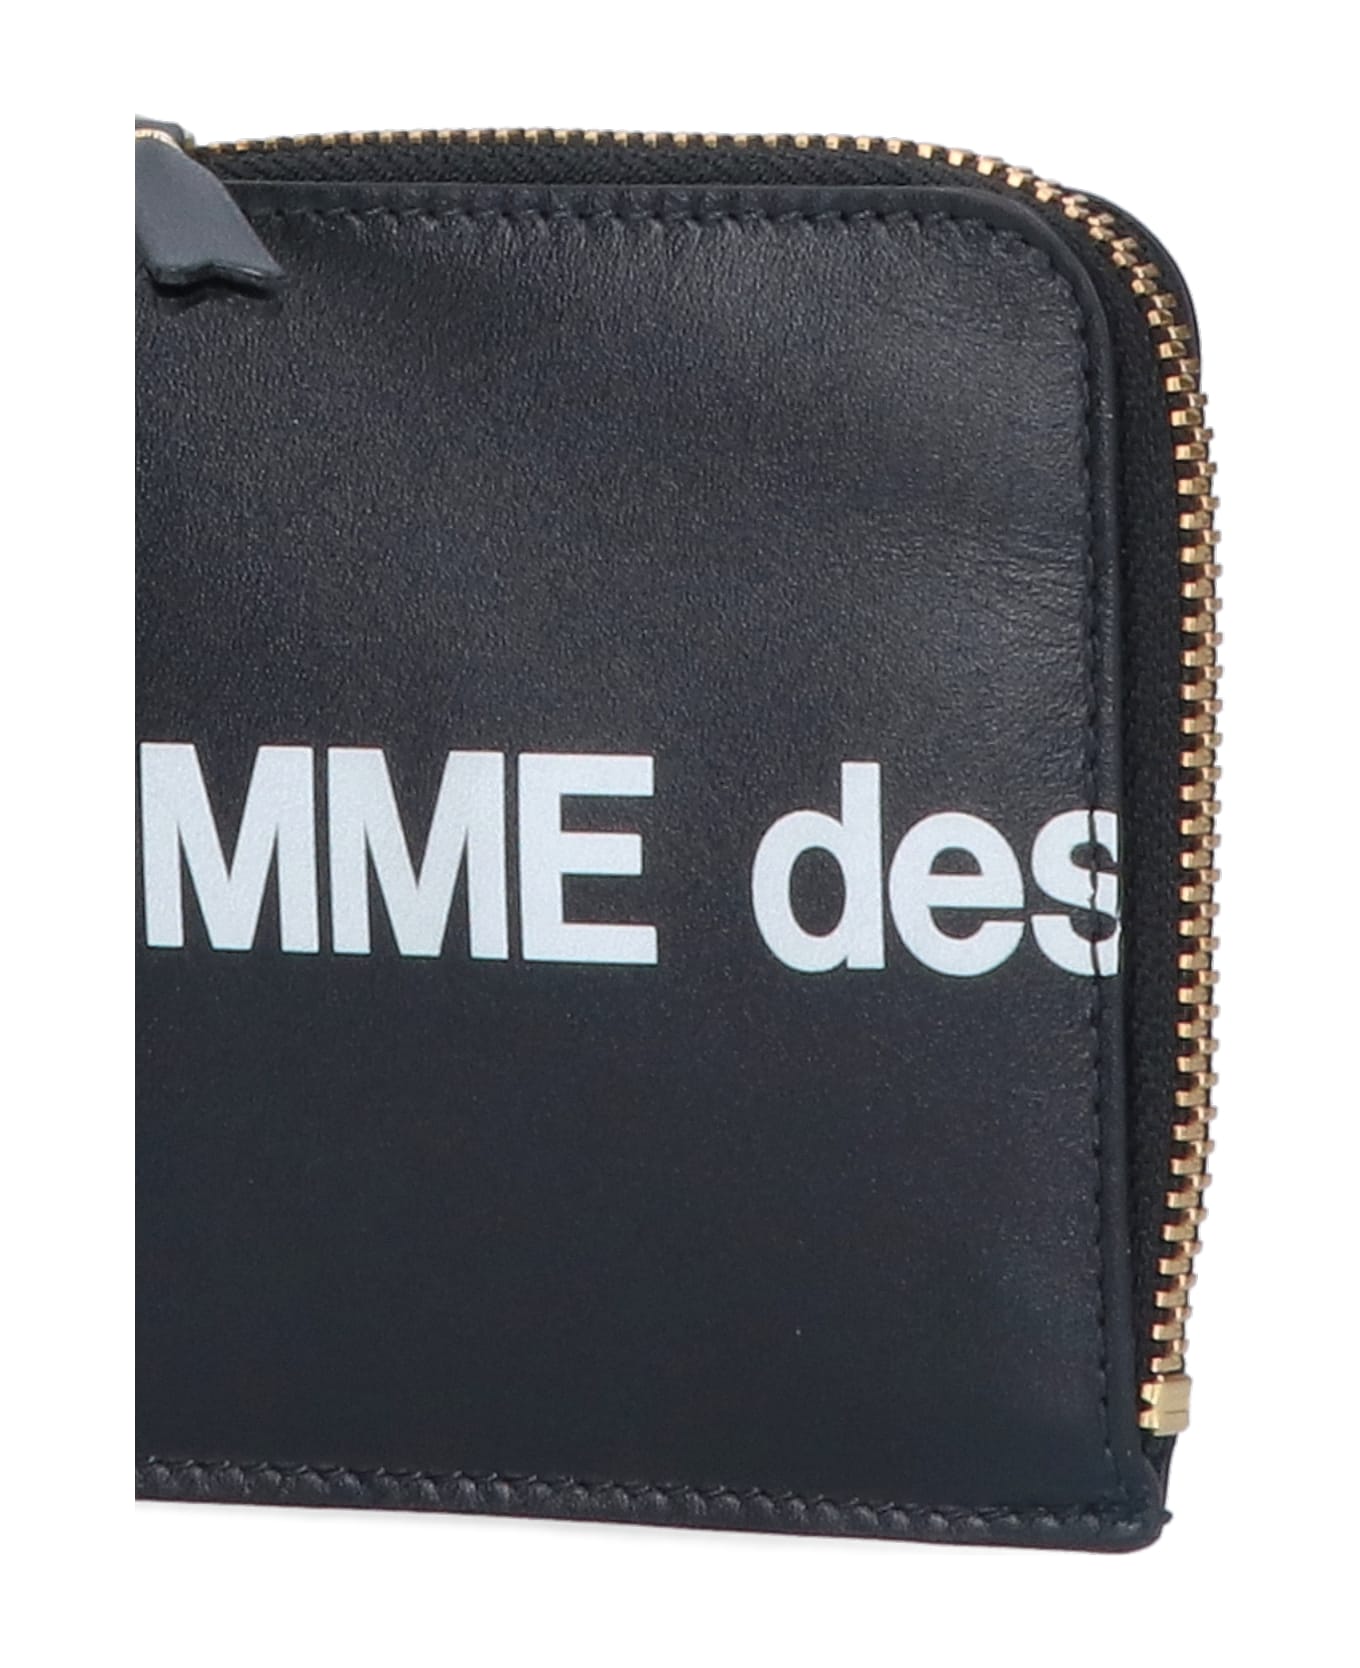 Comme des Garçons Wallet 'huge Logo' coin Purse - Black   財布